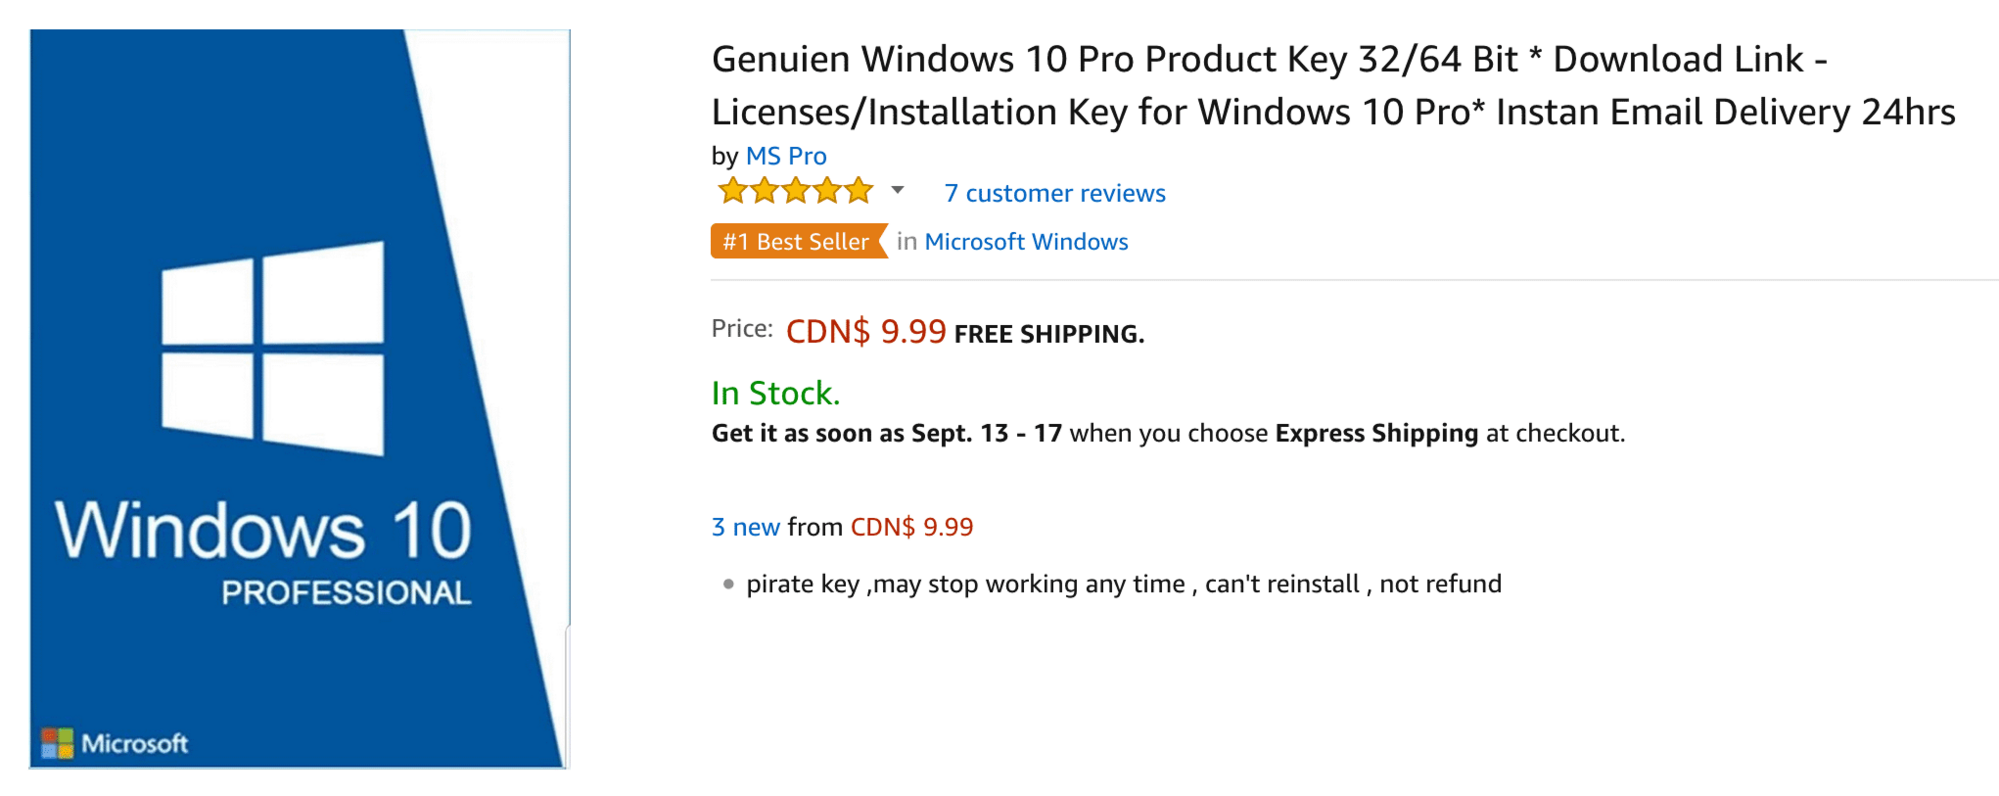 pirate bay windows 10 pro product key